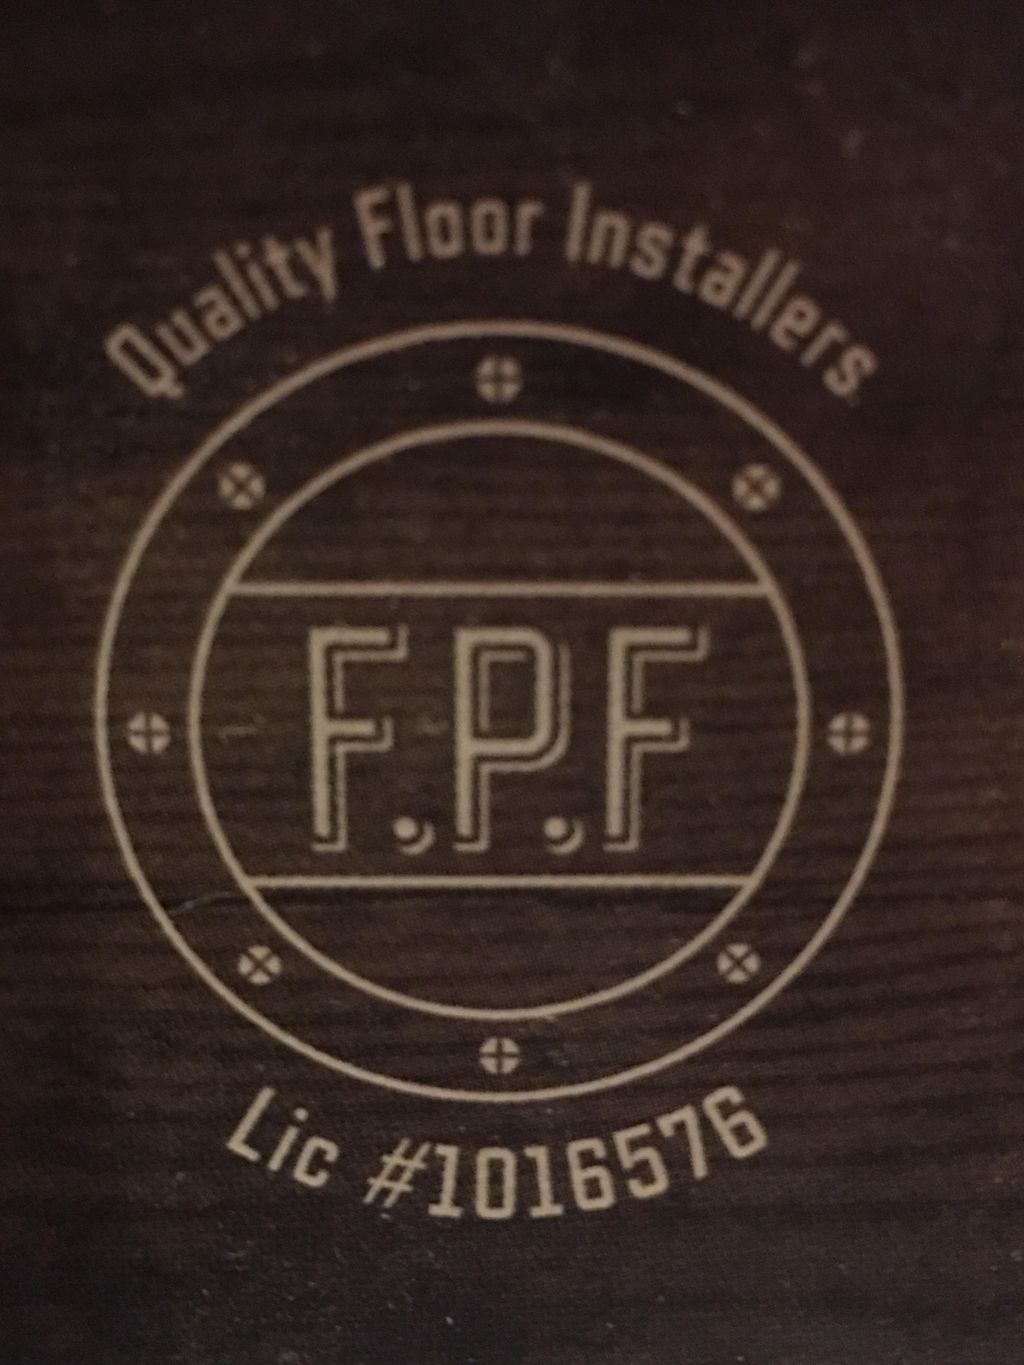 Franklins premier flooring